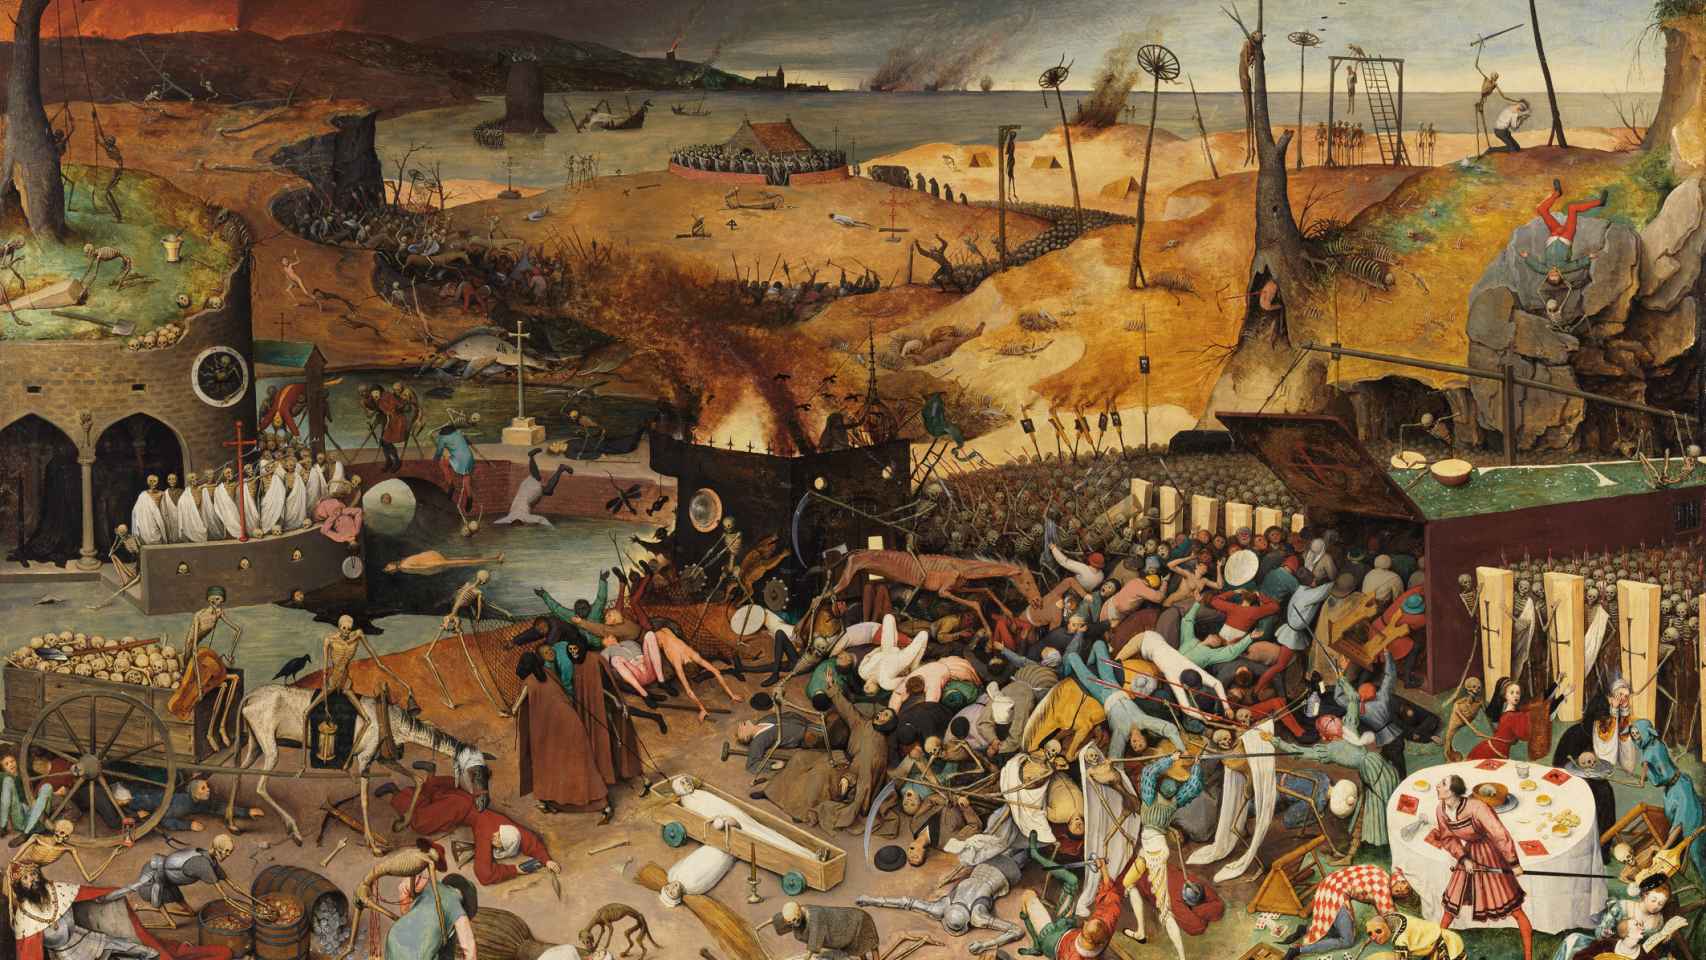 El triunfo de la Muerte, óleo de Pieter Brueghel el Viejo que describe alegóricamente una epidemia de peste.